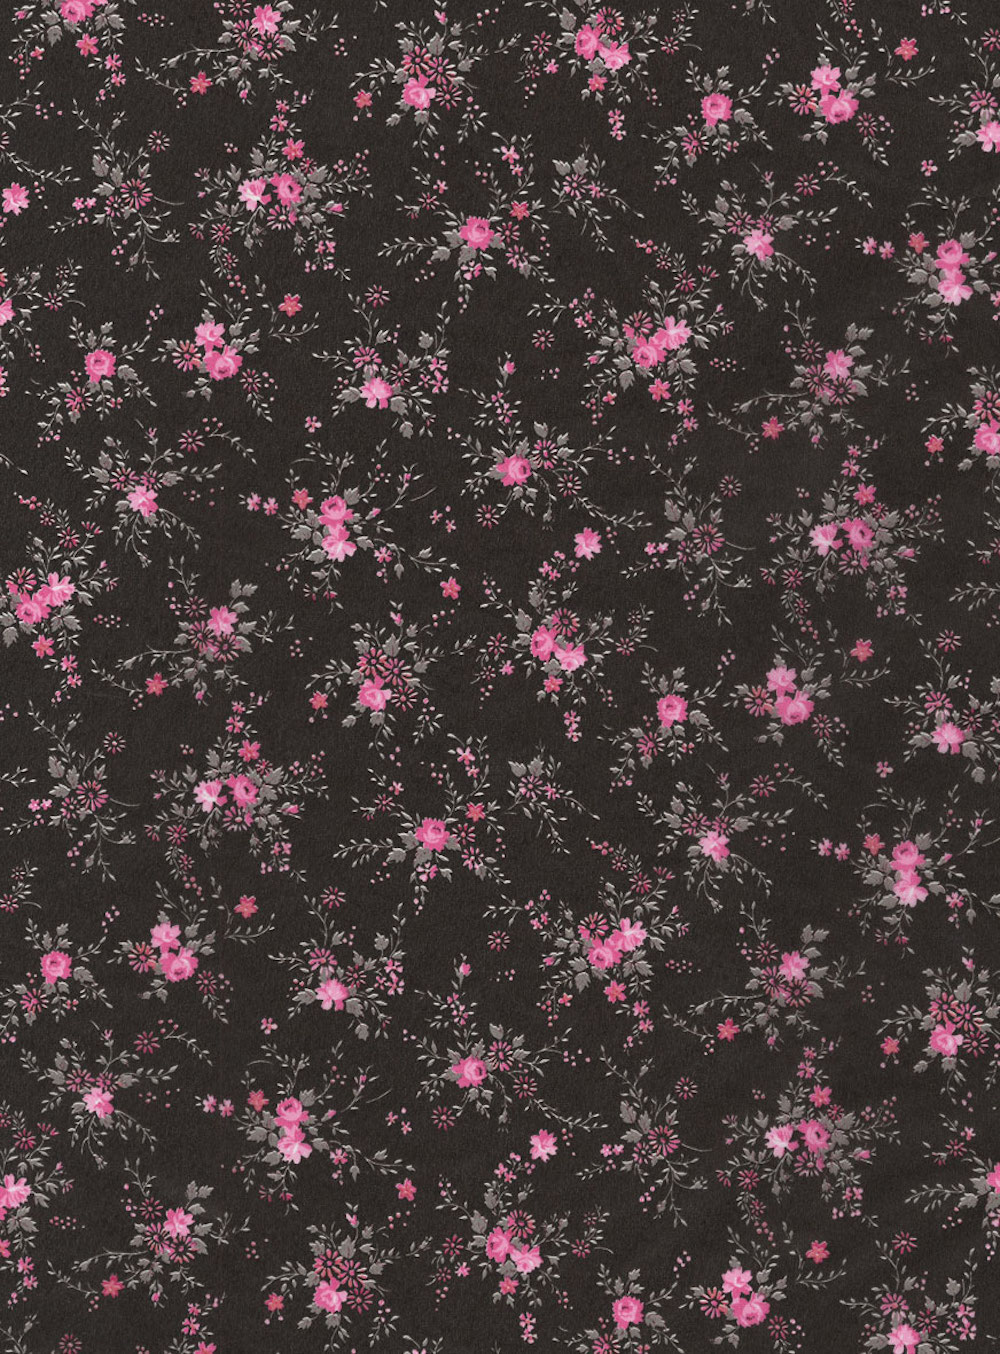 Décopatch-Papier 565 Blumenzweige pink/schwarz, 30 x 40 cm